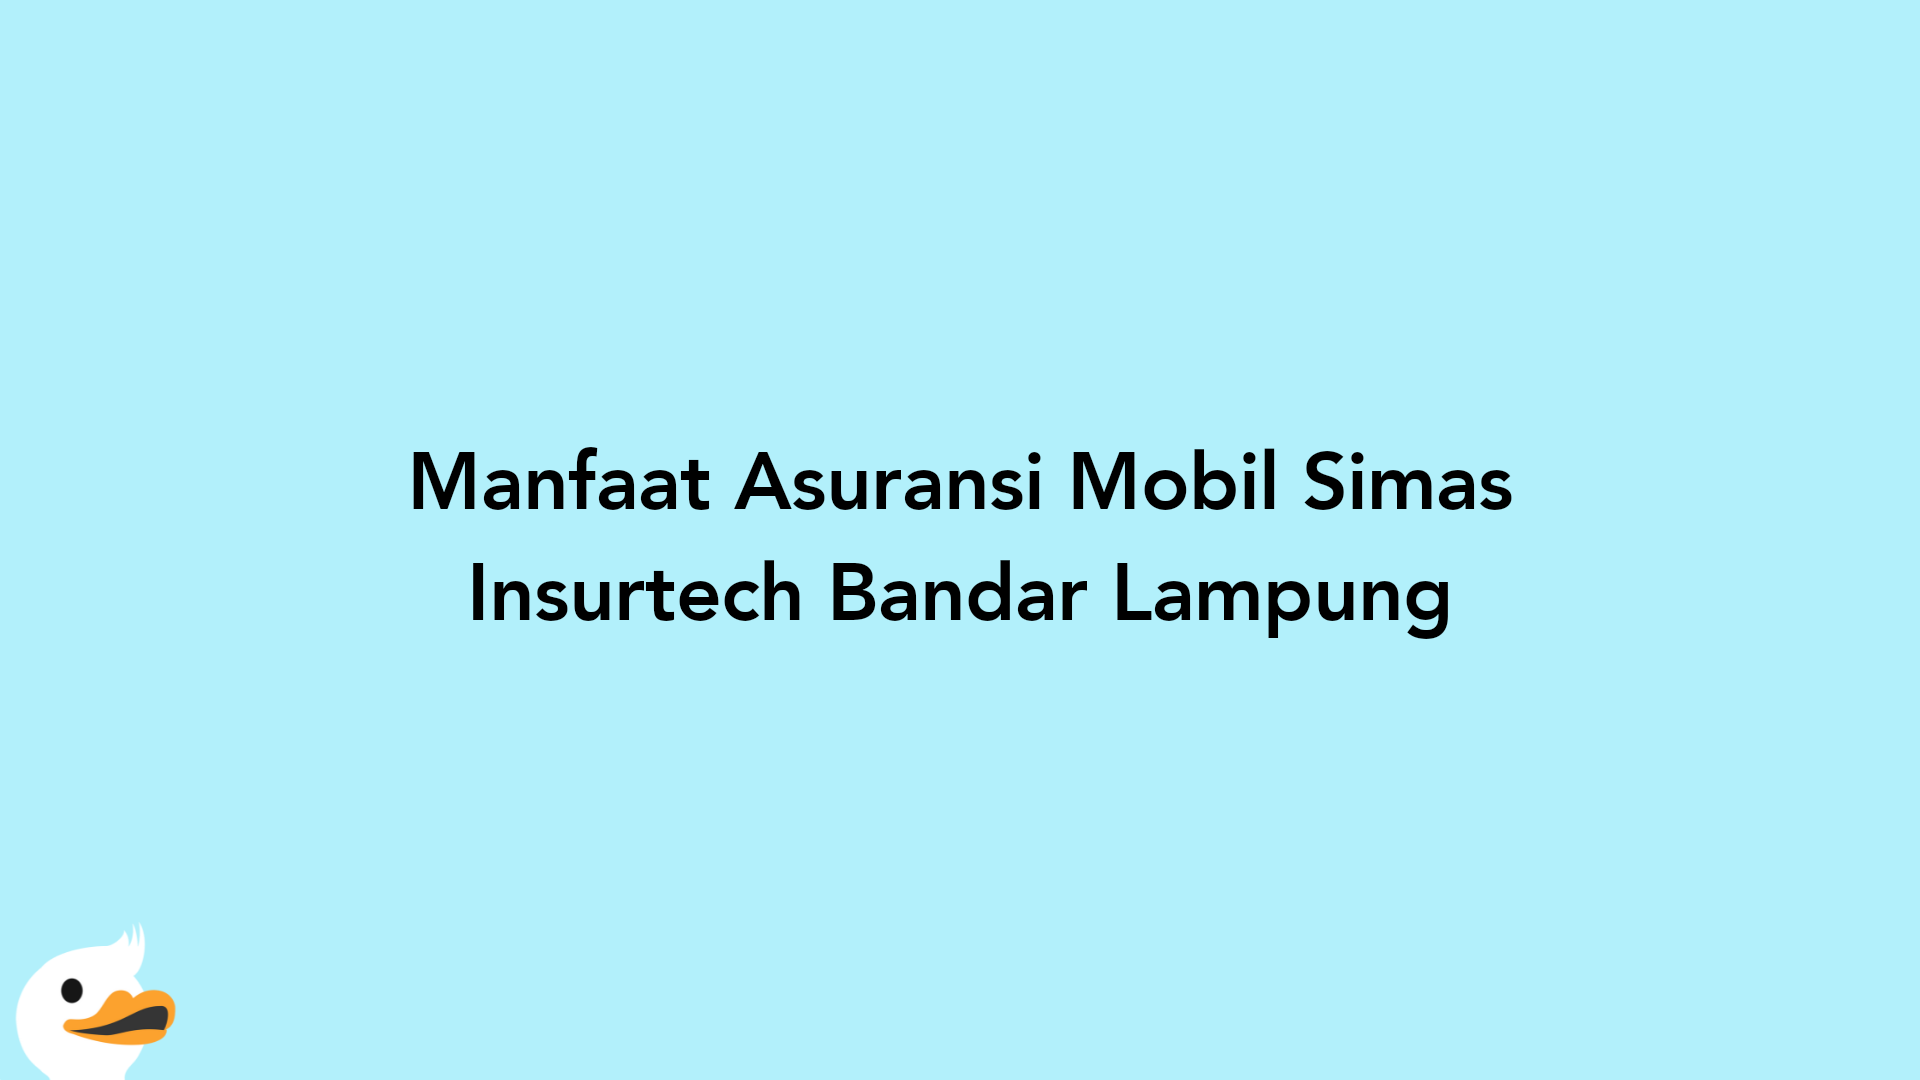 Manfaat Asuransi Mobil Simas Insurtech Bandar Lampung